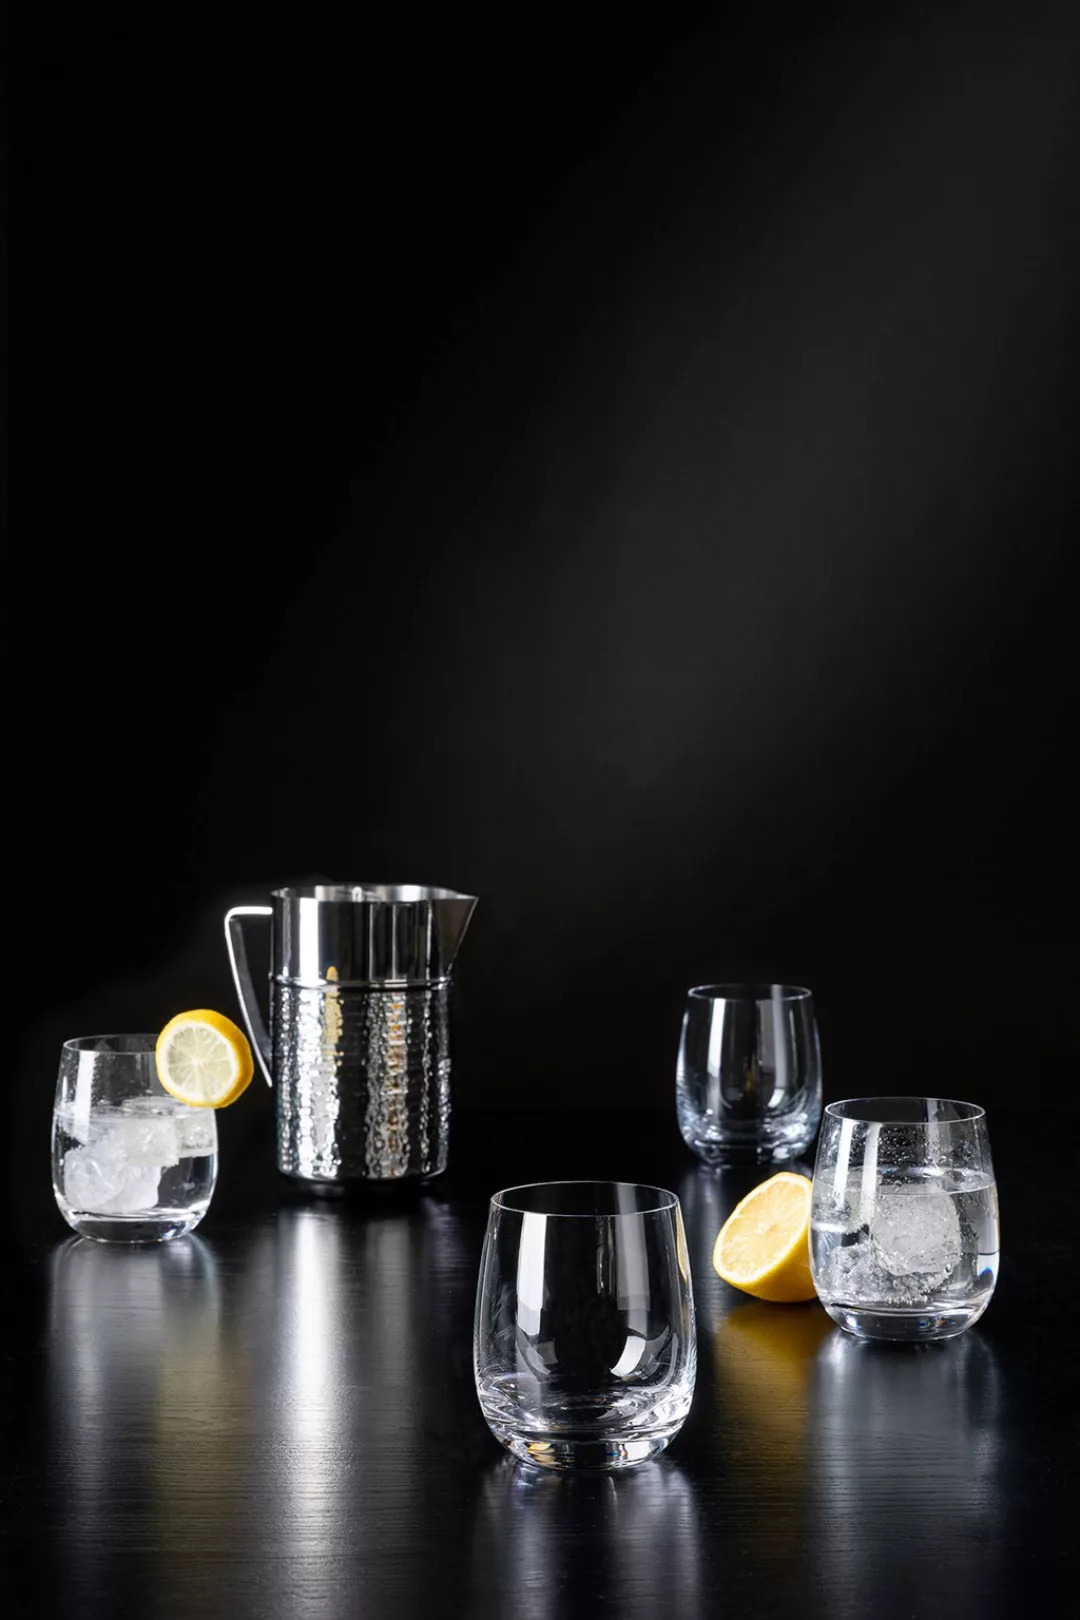 Fink Glas »PREMIO«, (Set, 4 tlg.), Trinkglas, 4er Set, transparent, Wasserg günstig online kaufen